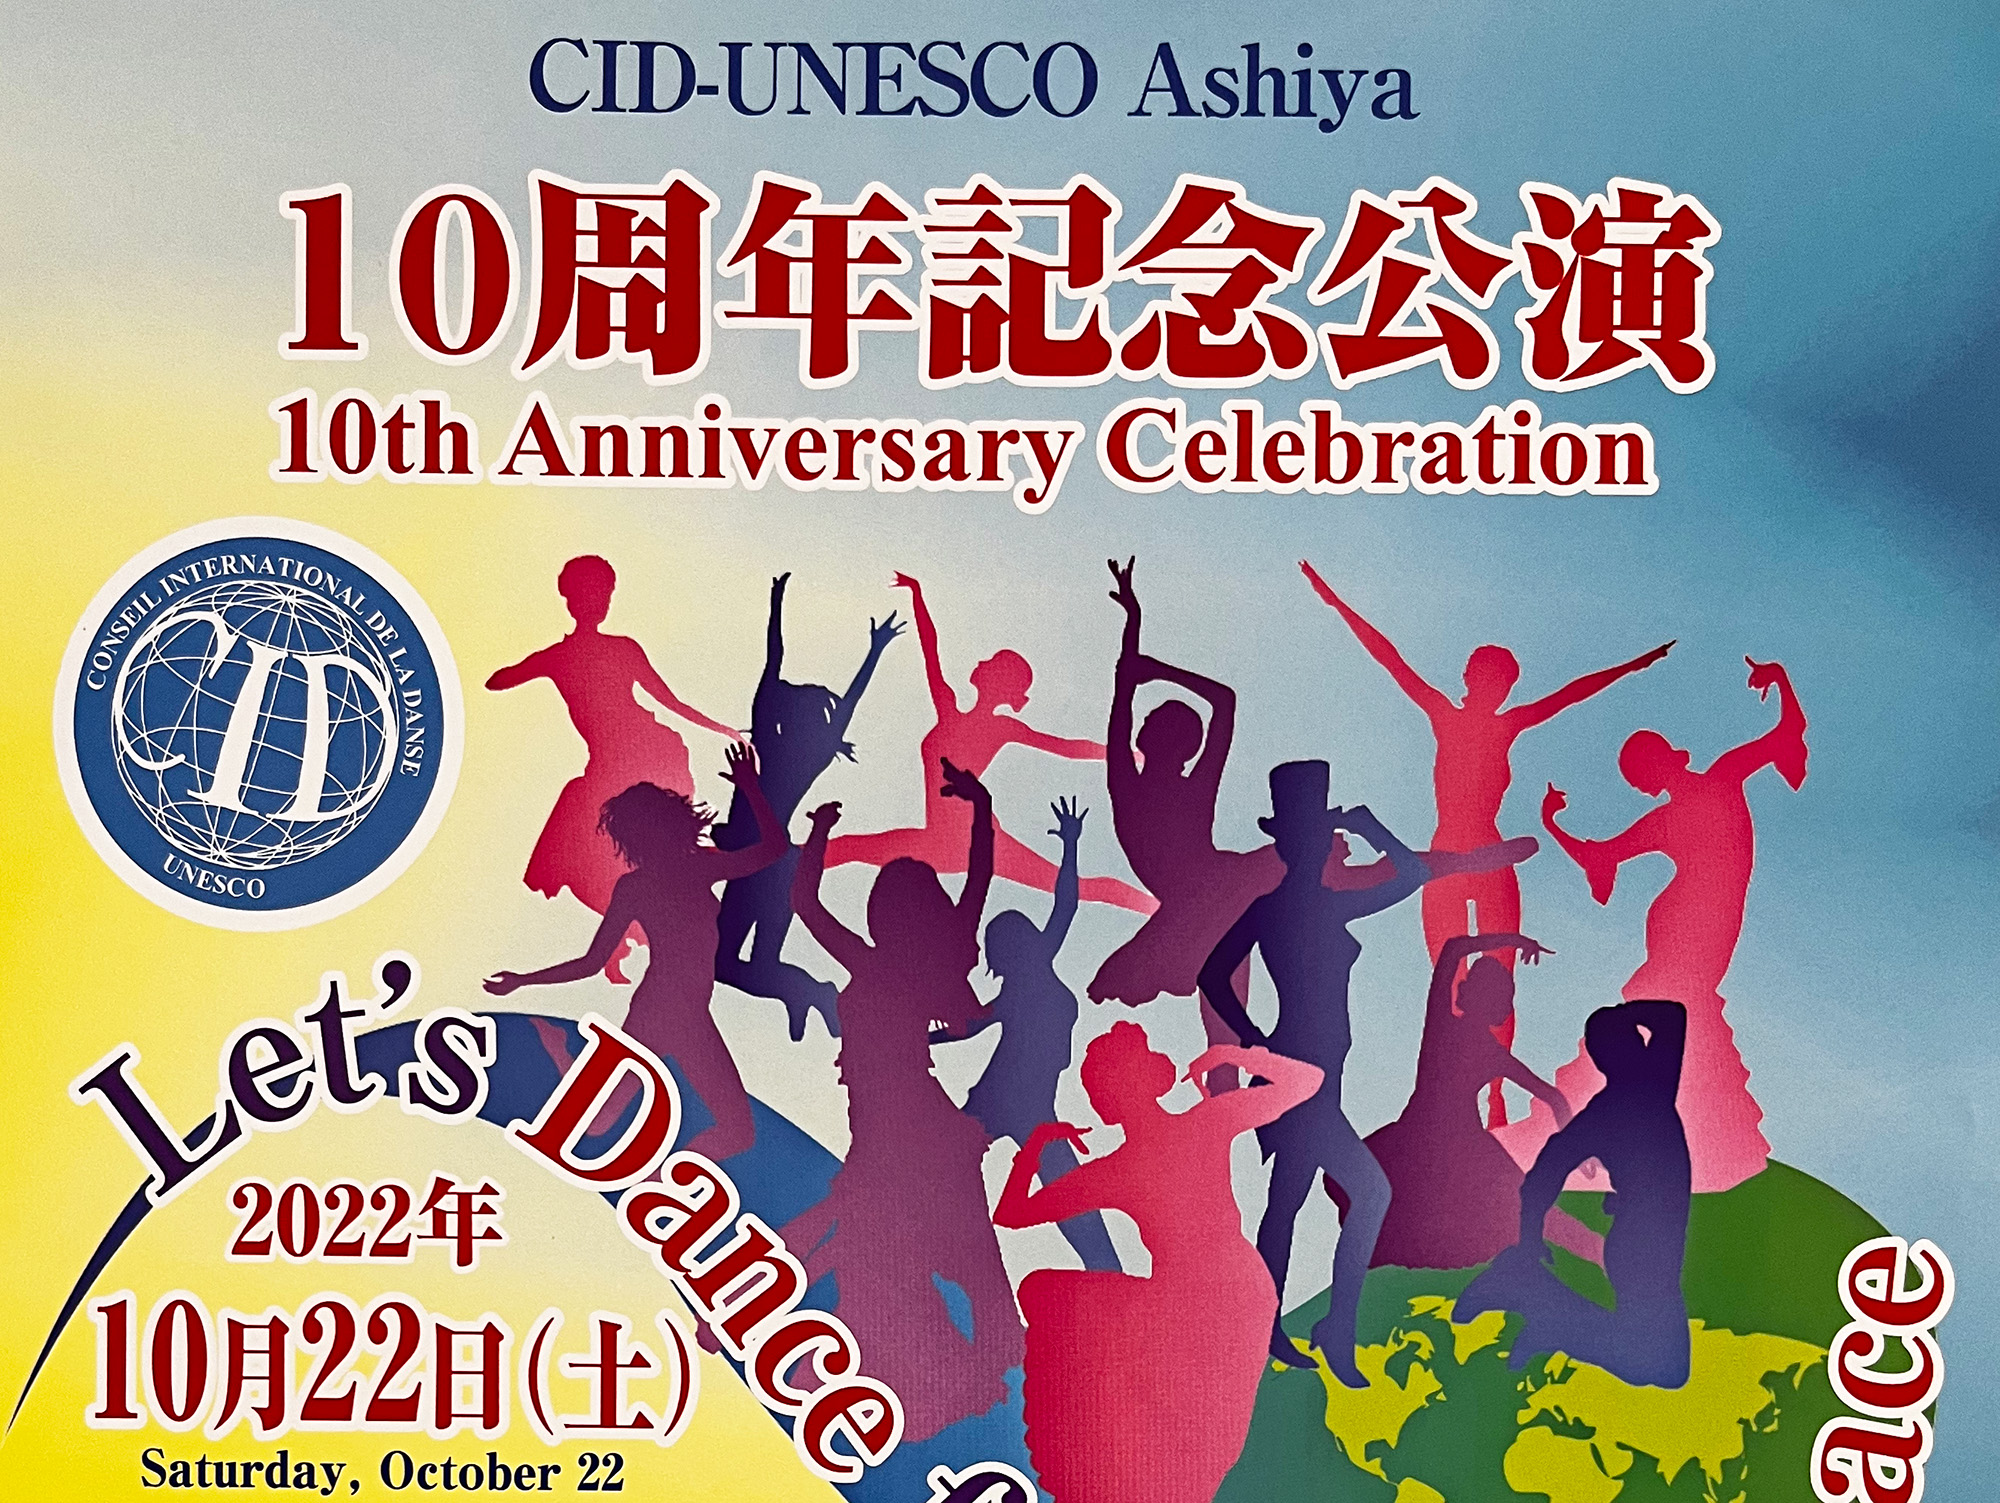 2022年10月20日 CID-UNESCO Ashiya 10周年記念公演